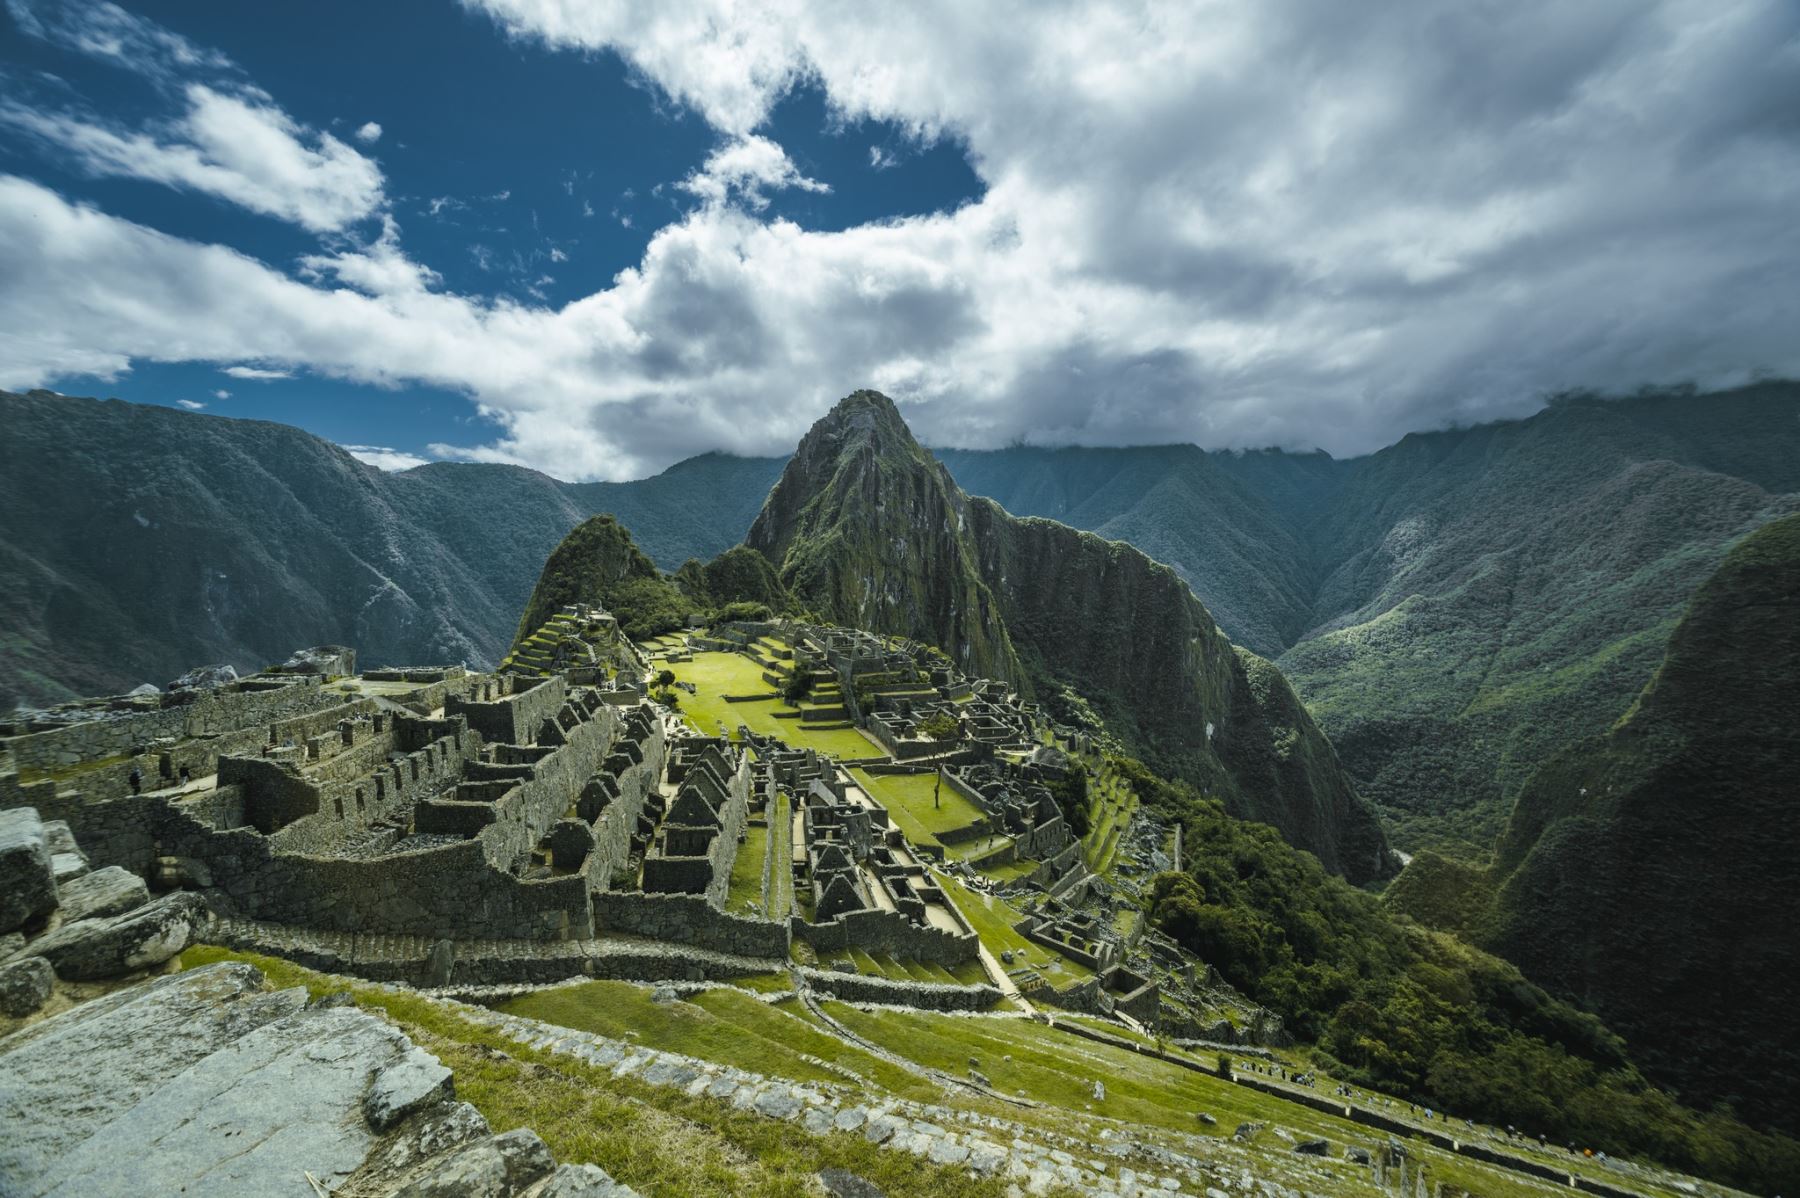 El premio a “Mejor atracción turística de Sudamérica” que recibió el Santuario Inca de Machu Picchu, por la World Travel Awards (WTA) 2023, conocidos como los "Oscar del Turismo”, incentivará la reactivación económica del distrito del mismo nombre y la región del Cusco.
Foto: Cortesía